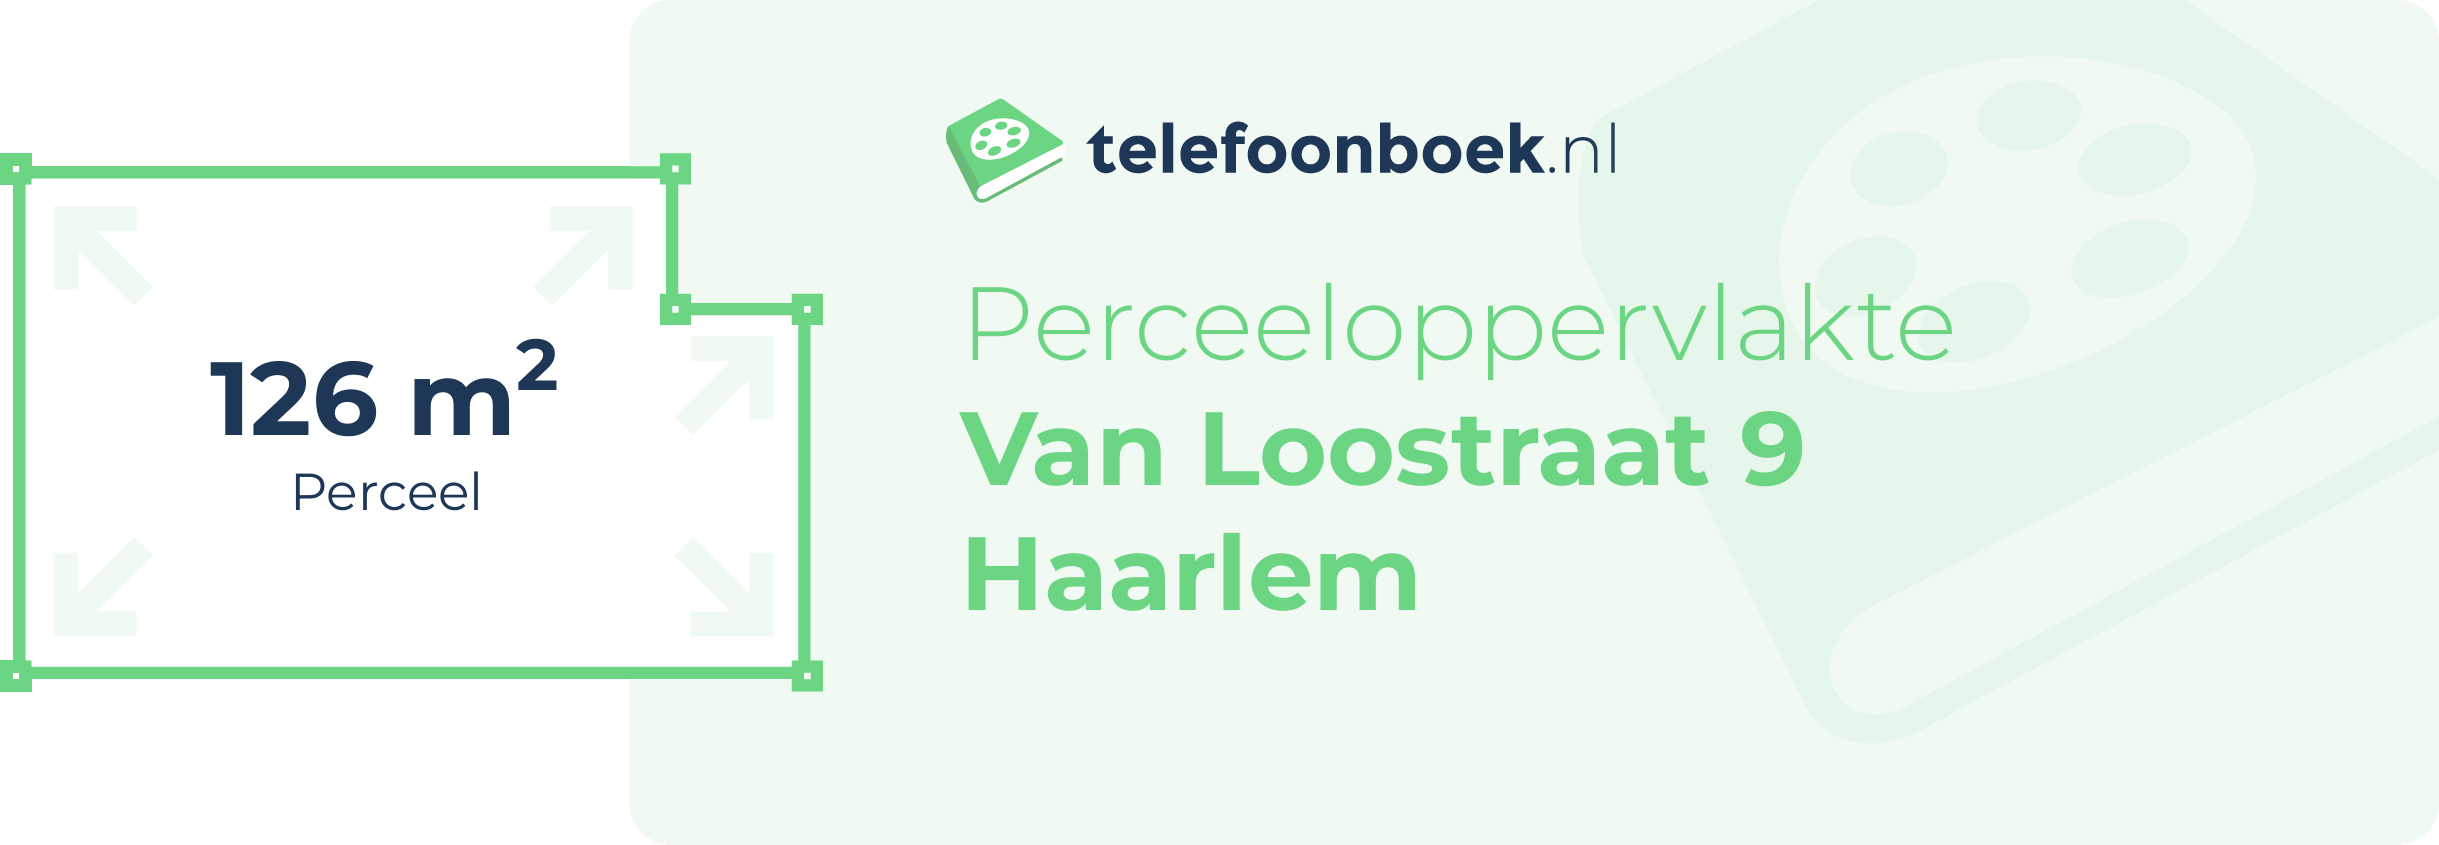 Perceeloppervlakte Van Loostraat 9 Haarlem